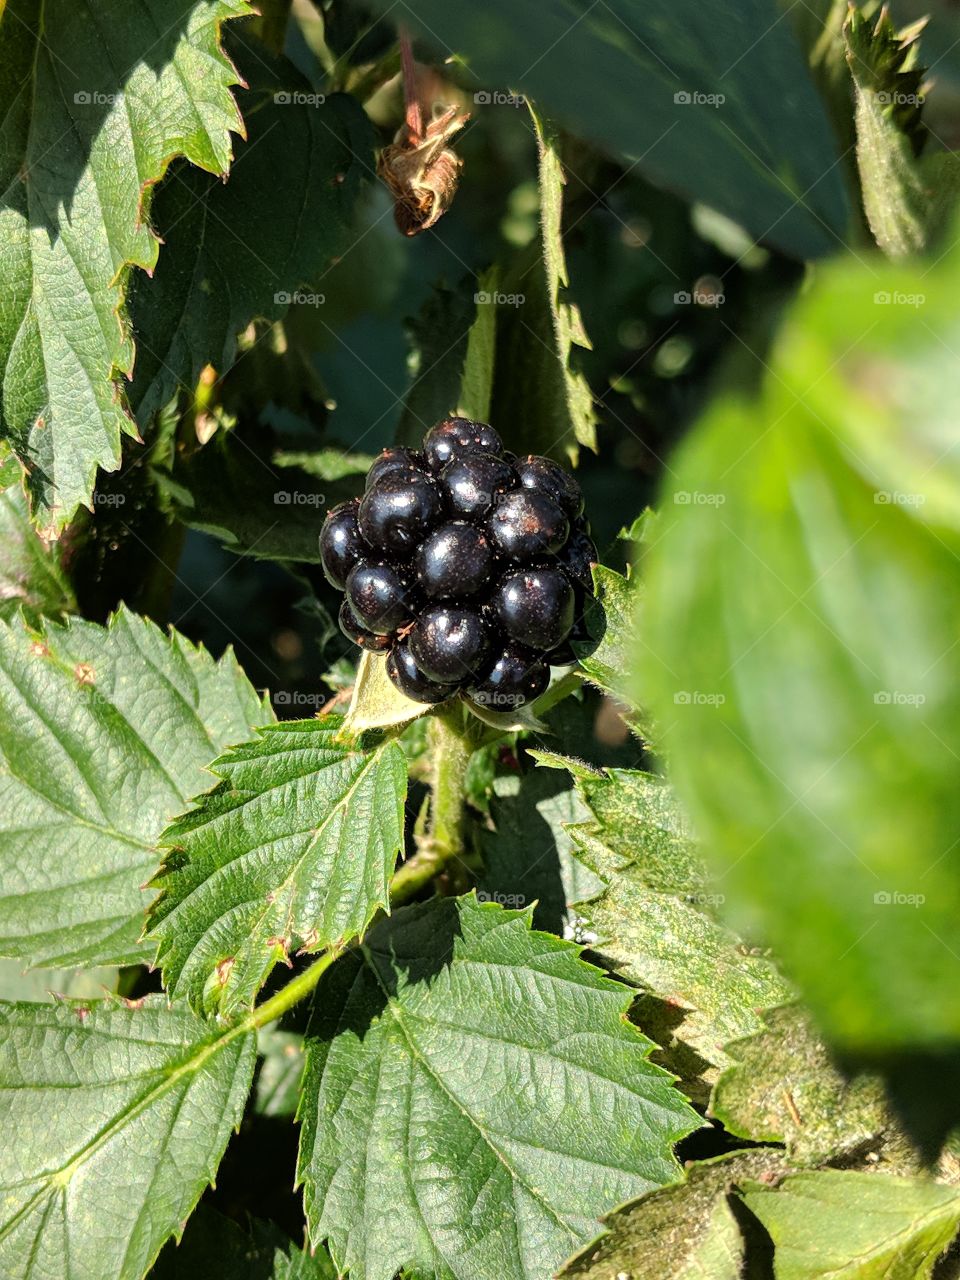 nice plump blackberry